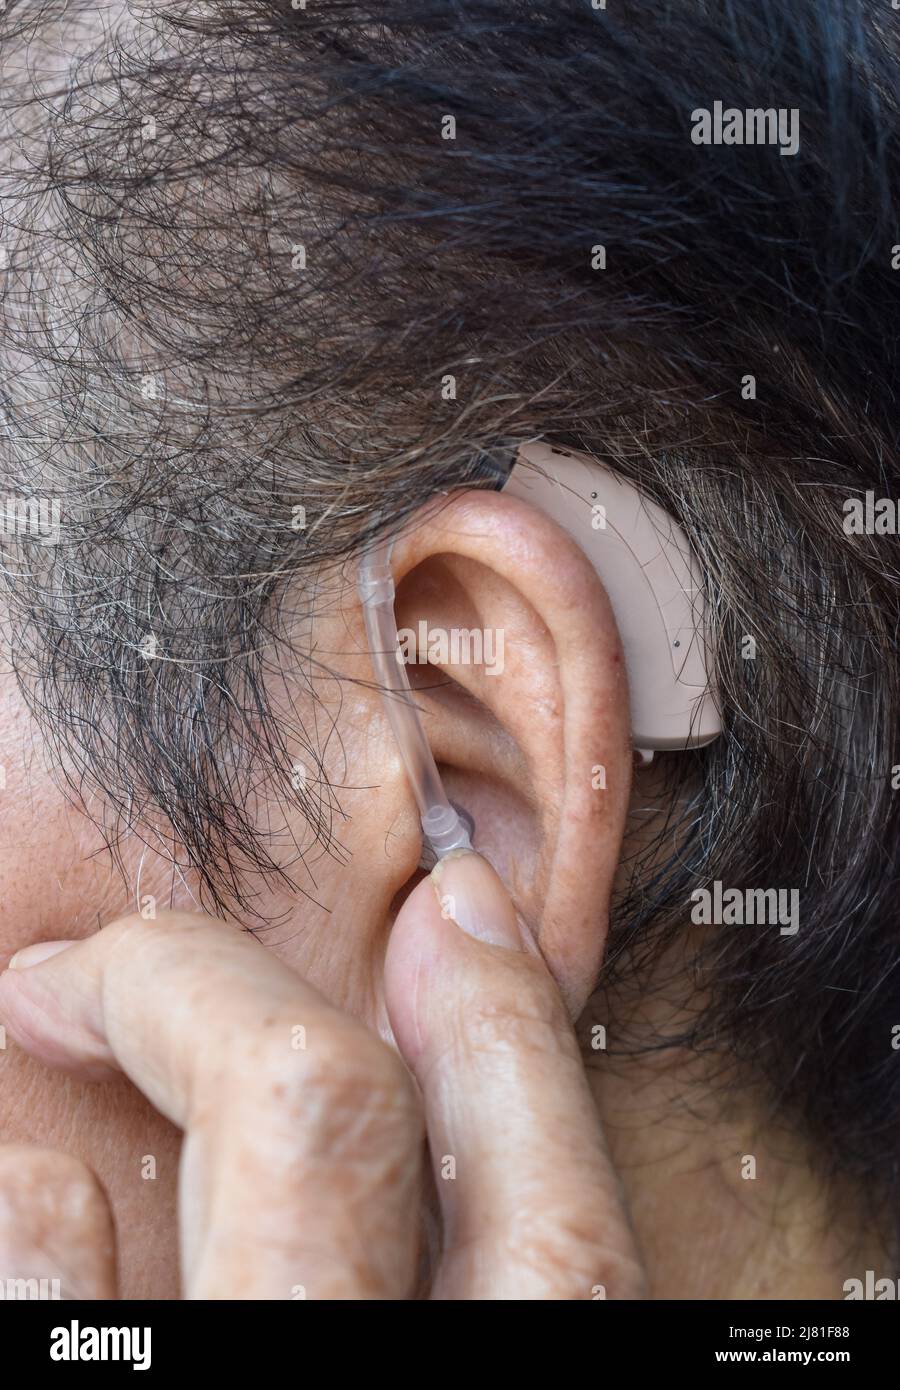 Dispositivo electrónico de ayuda auditiva en el oído de un anciano asiático con sordera total. Foto de stock